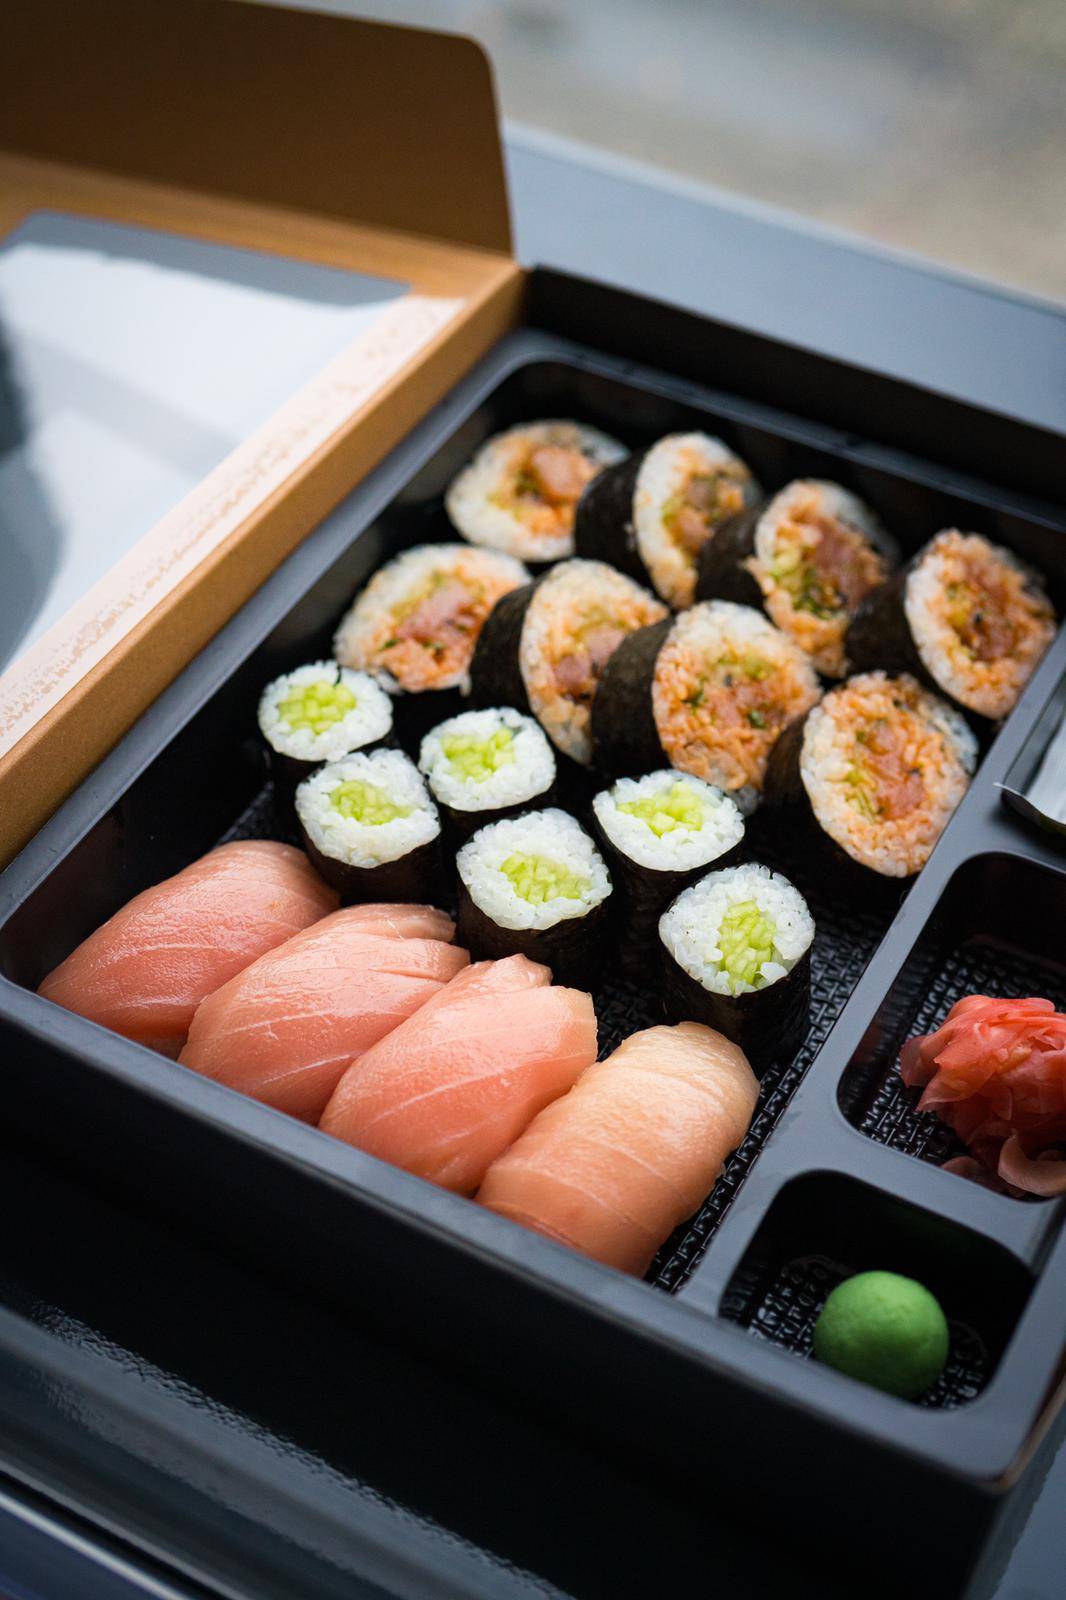 Popularna delikatesna ribarnica Fisherija širi svoju ponudu: Od sada tamo možete kupiti sushi